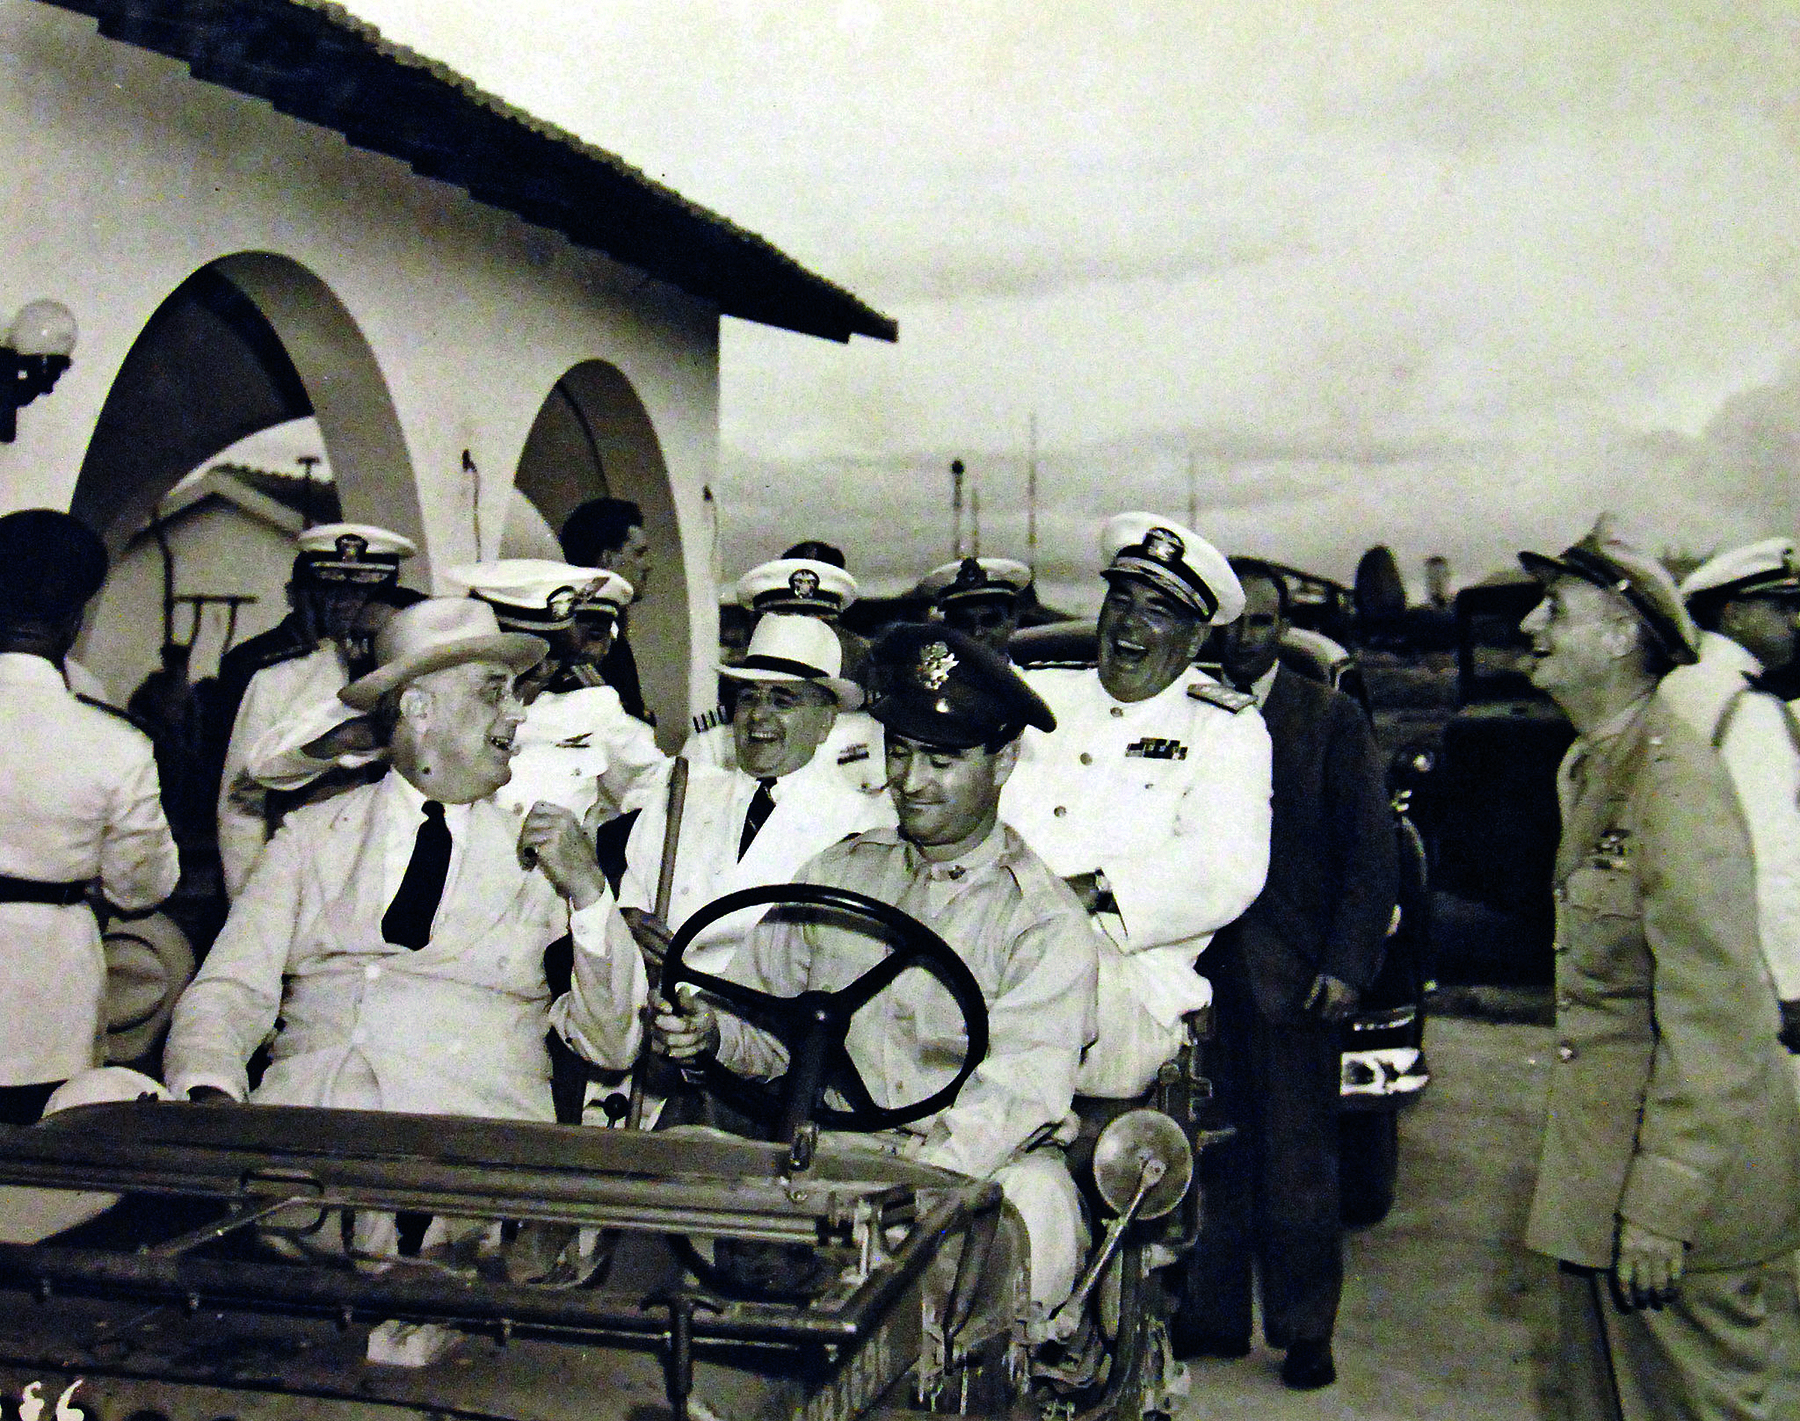 Fotografia em preto e branco. Um grupo de homens sobre um veículo antigo, alguns vestindo paletós, outros fardados.